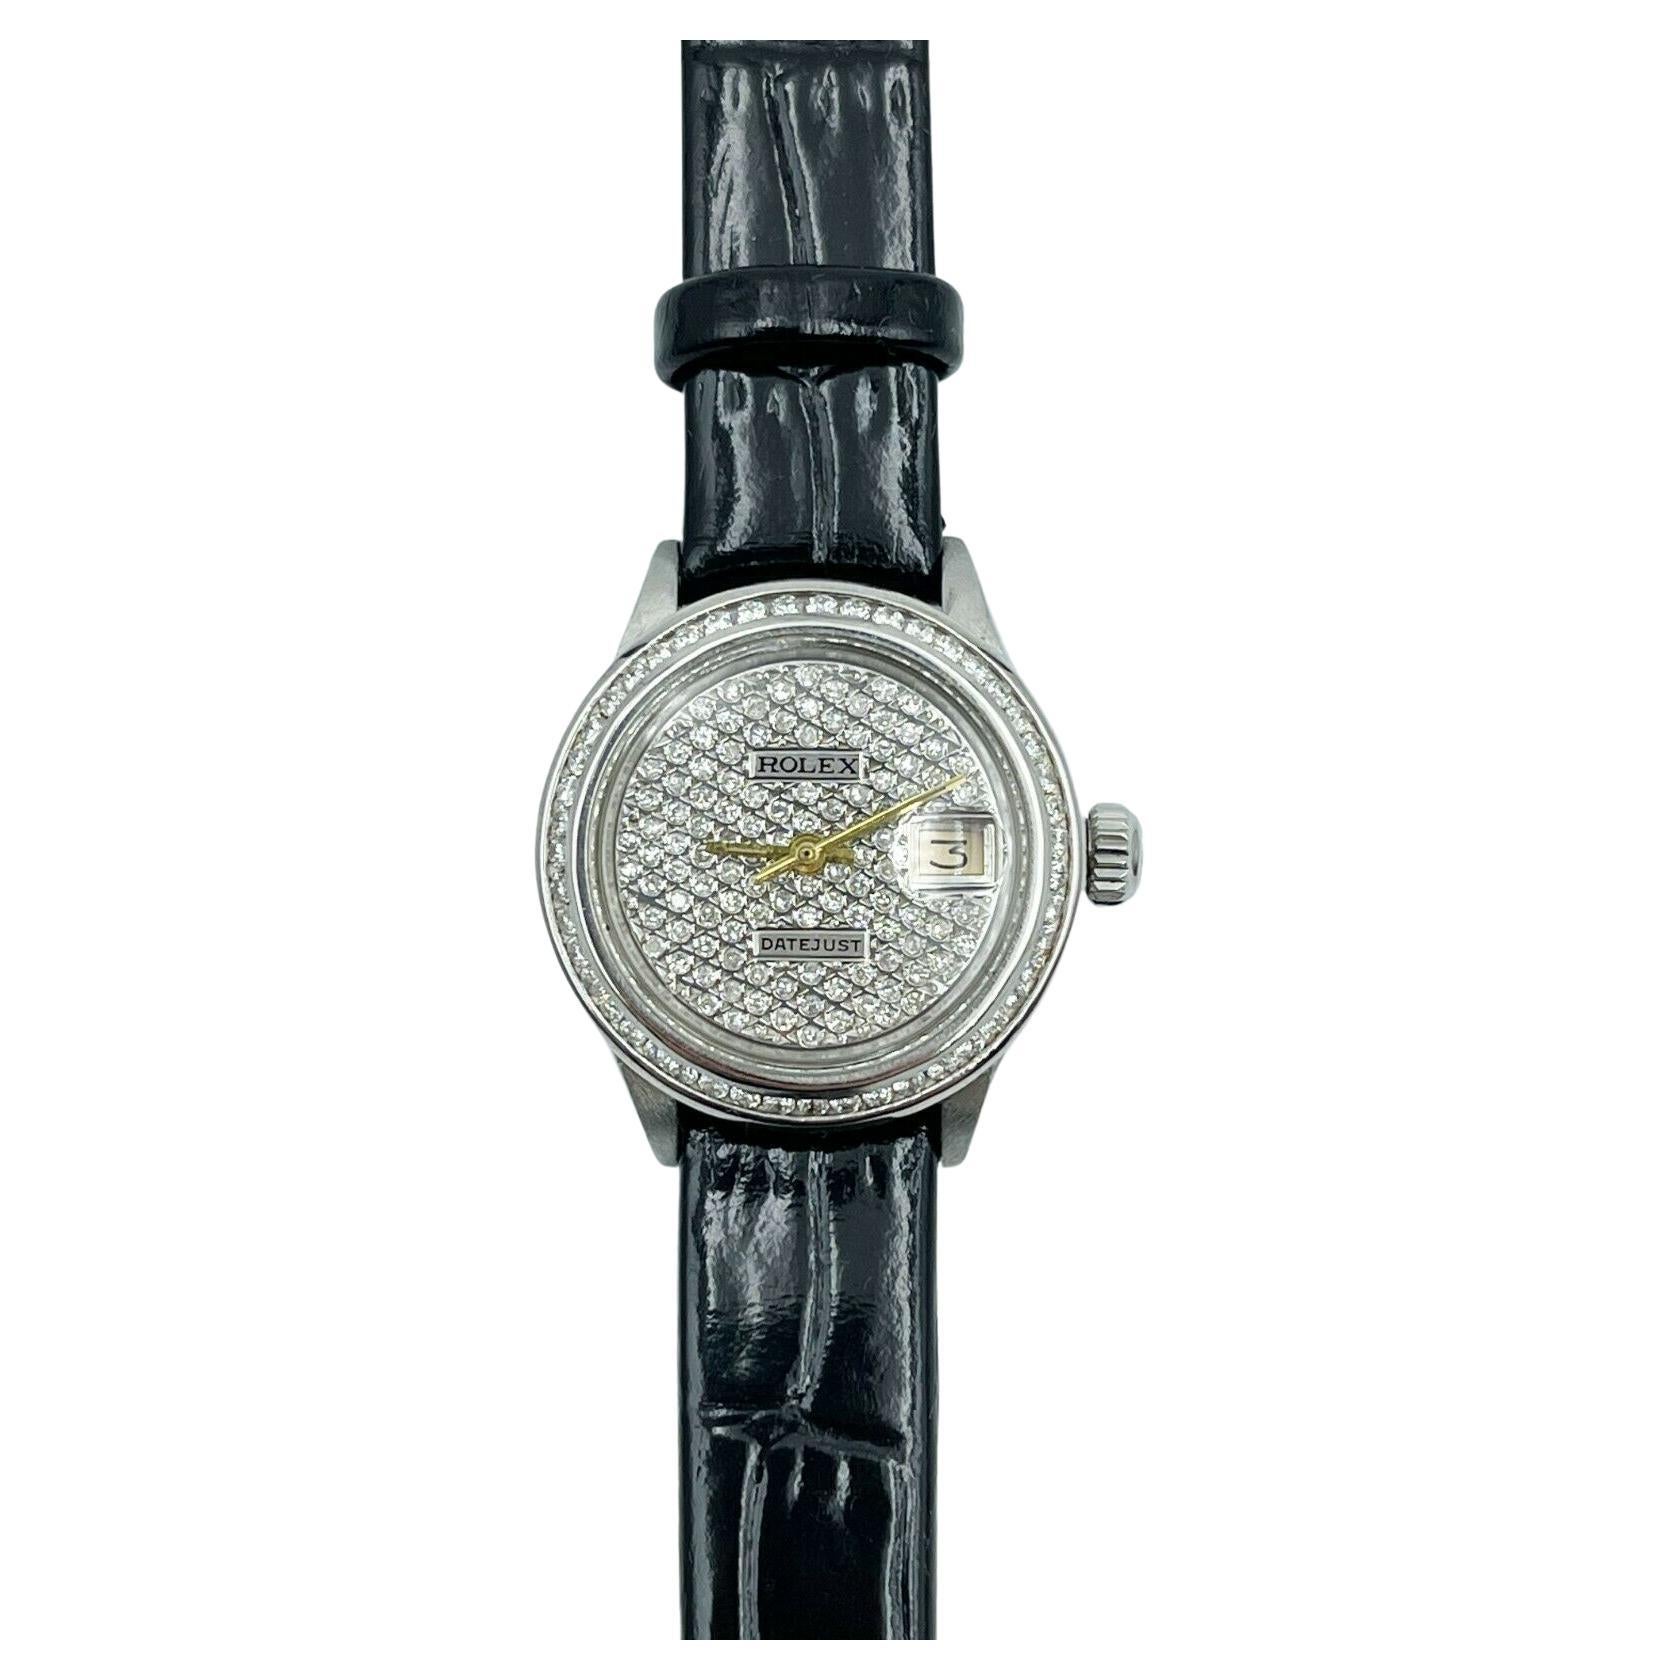 Rolex Montre Datejust 6917 pour femme avec cadran en diamants et lunette en diamants, bracelet en cuir inoxydable